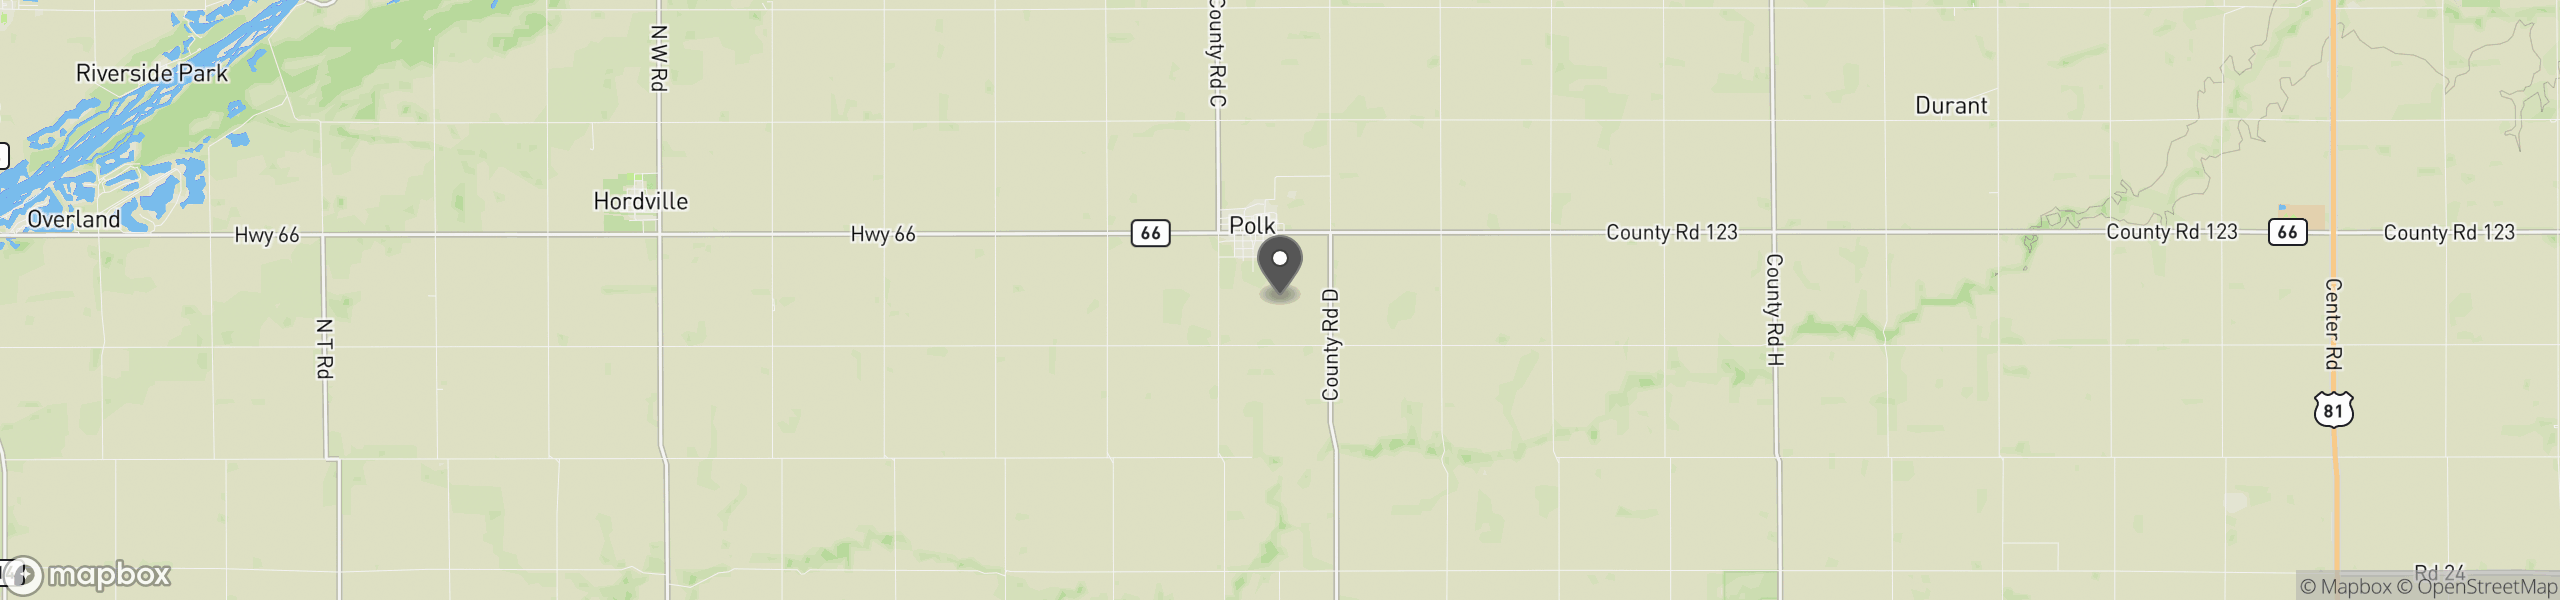 Polk, NE 68654